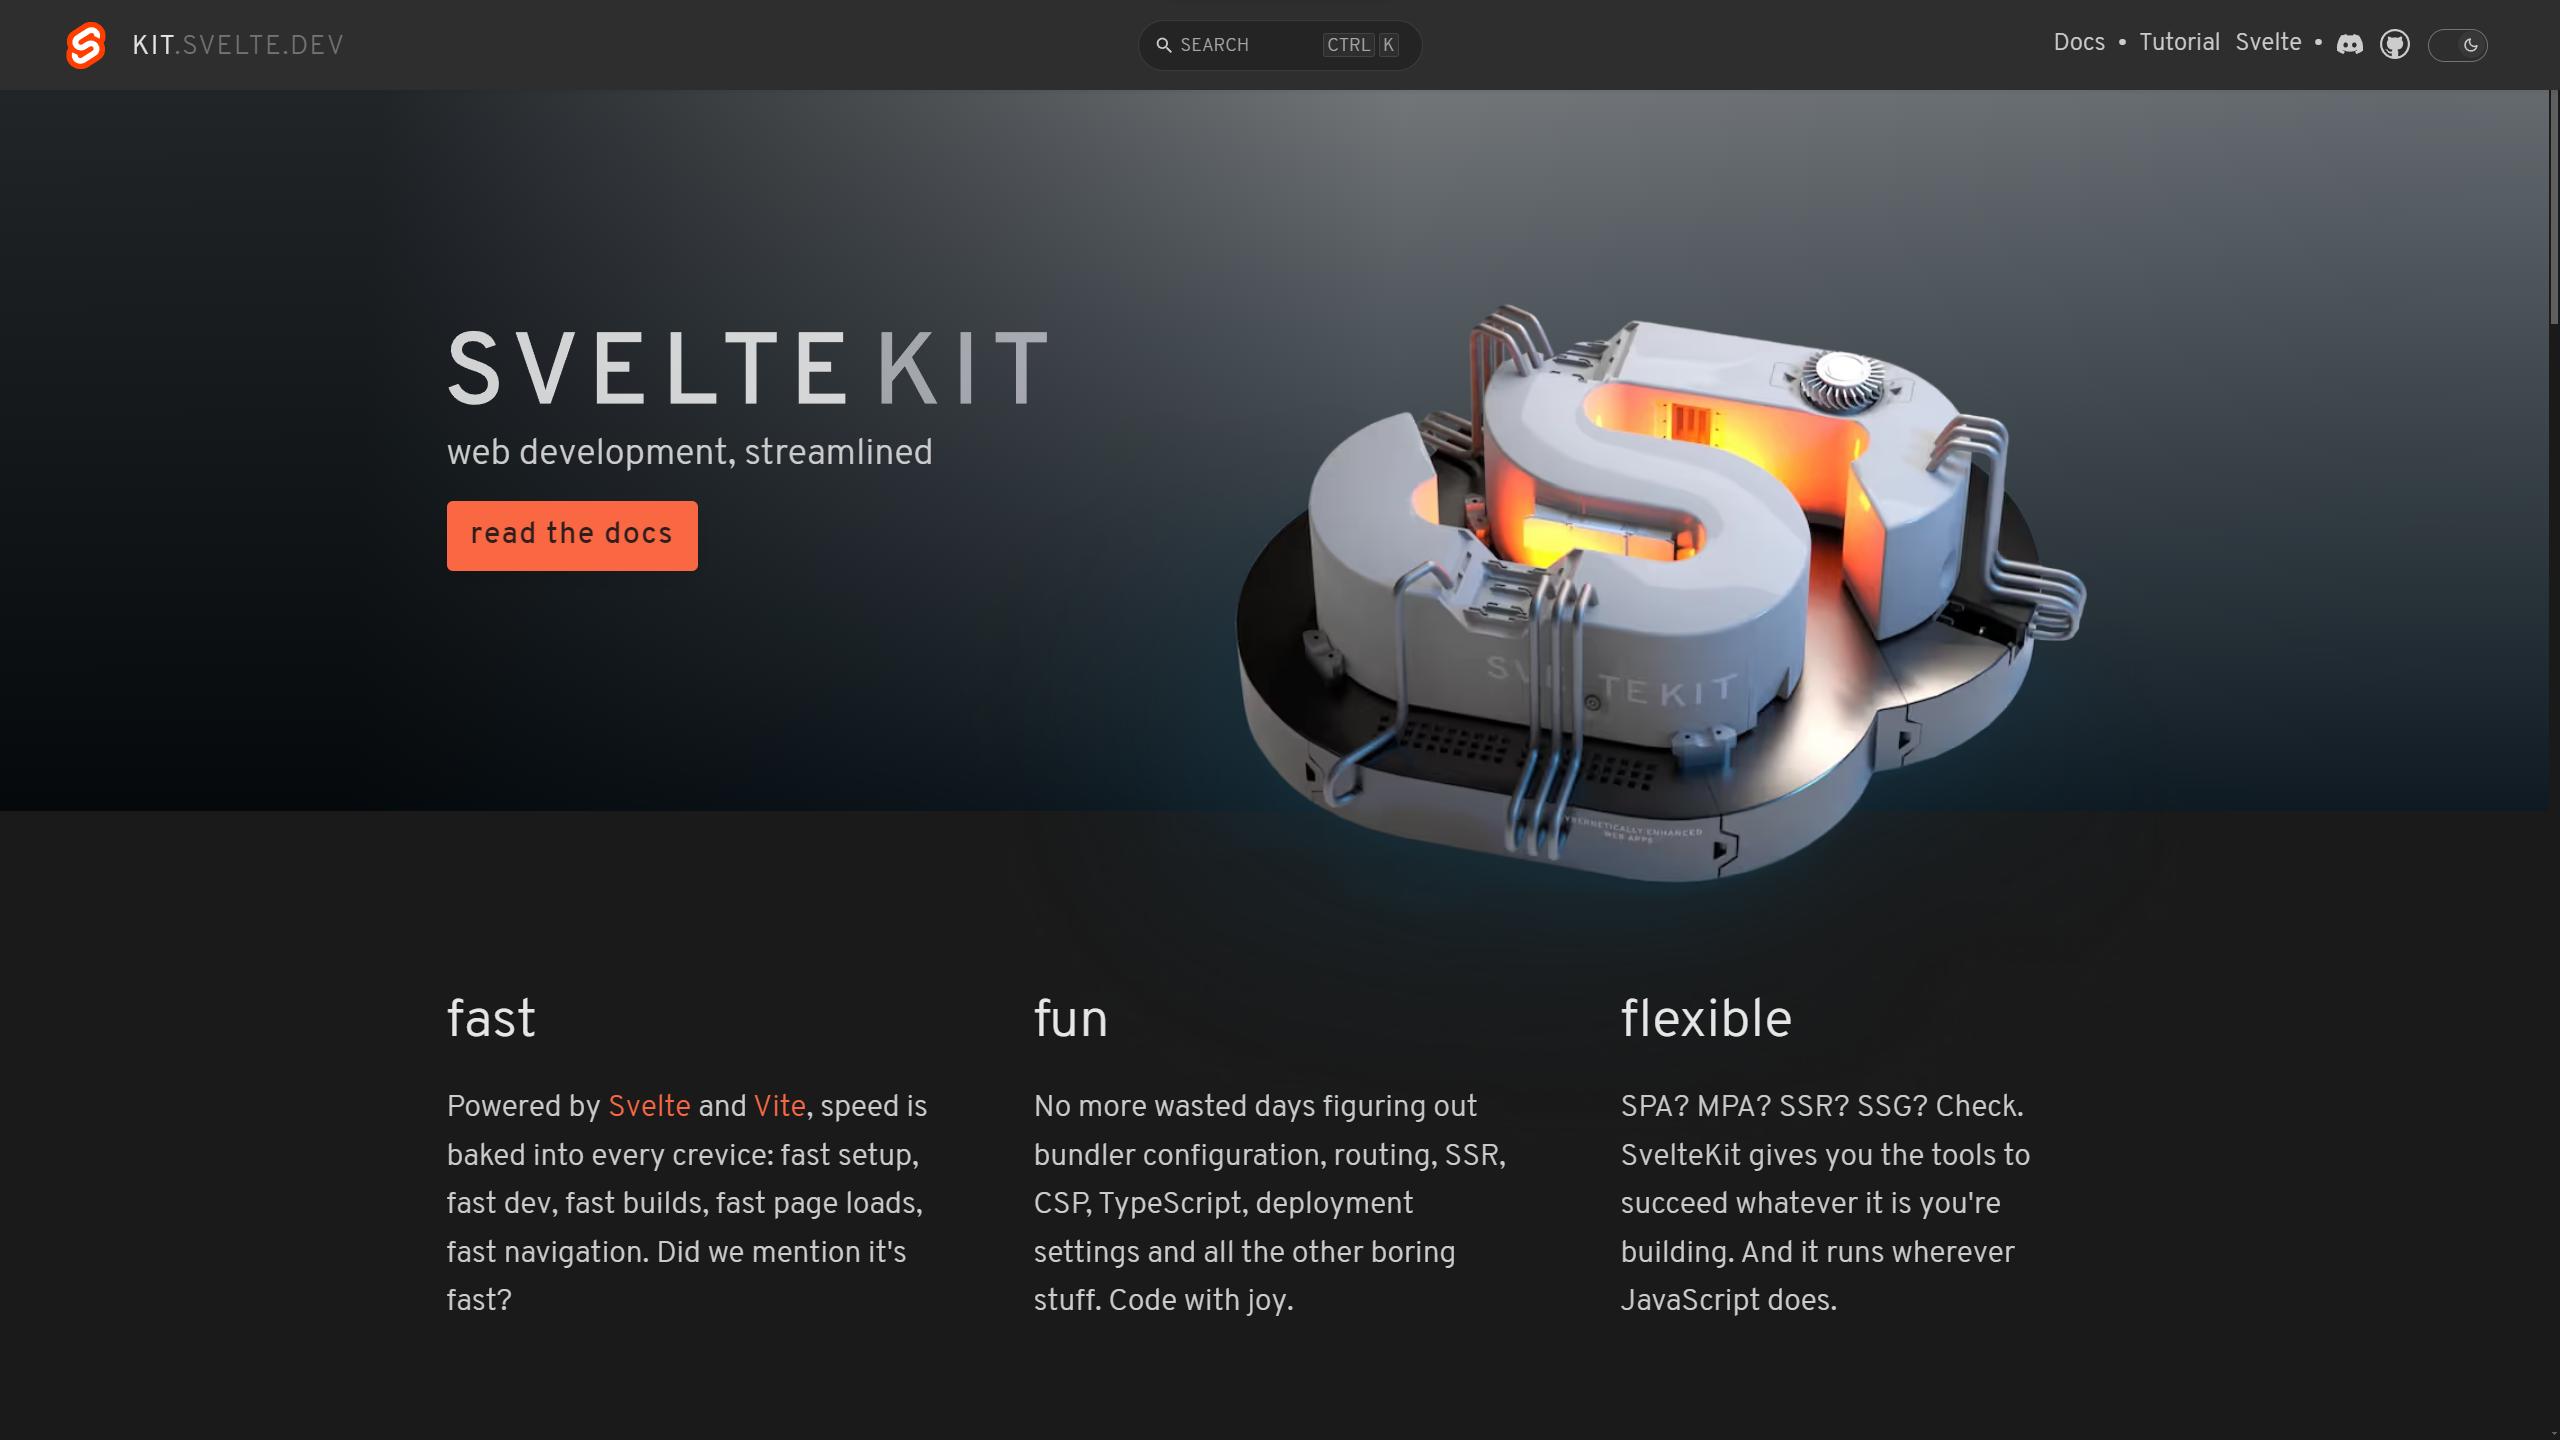 The SvelteKit homepage